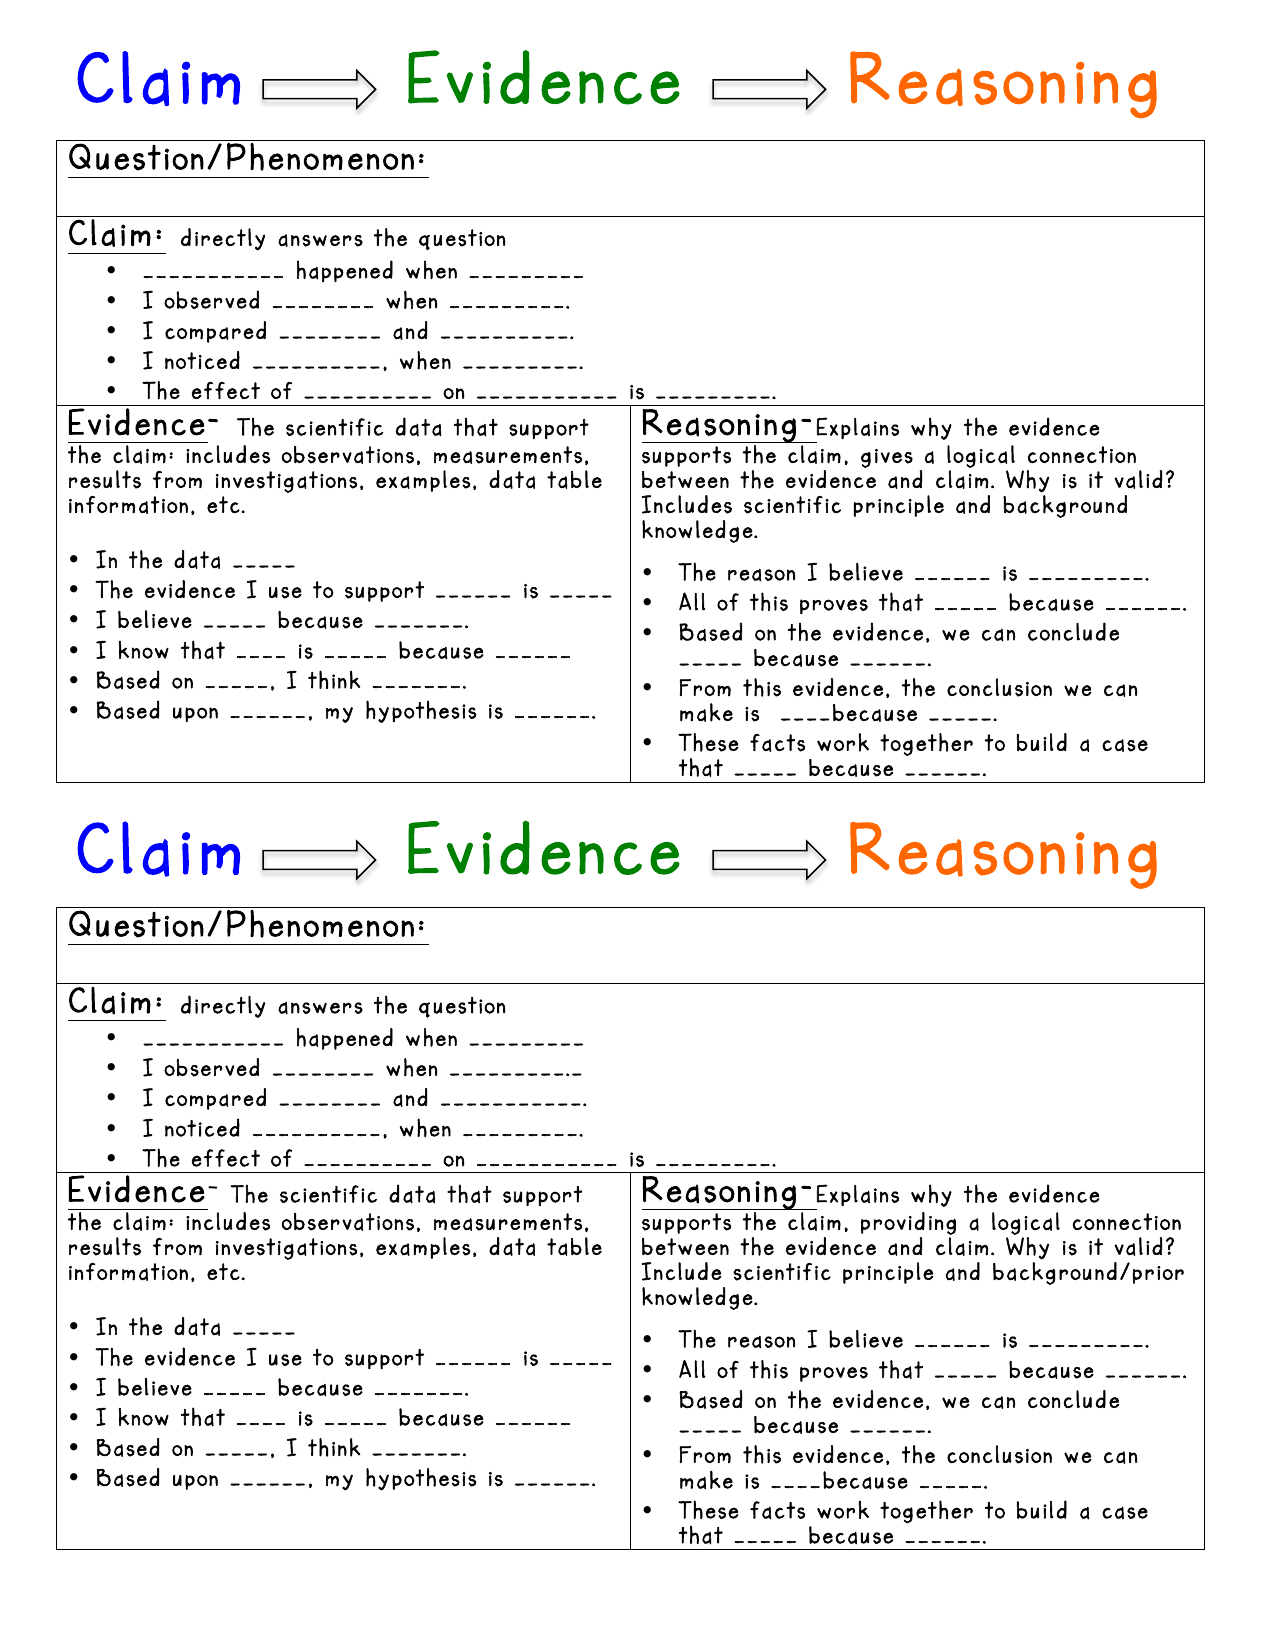 claim-evidence-reasoning-science-worksheet